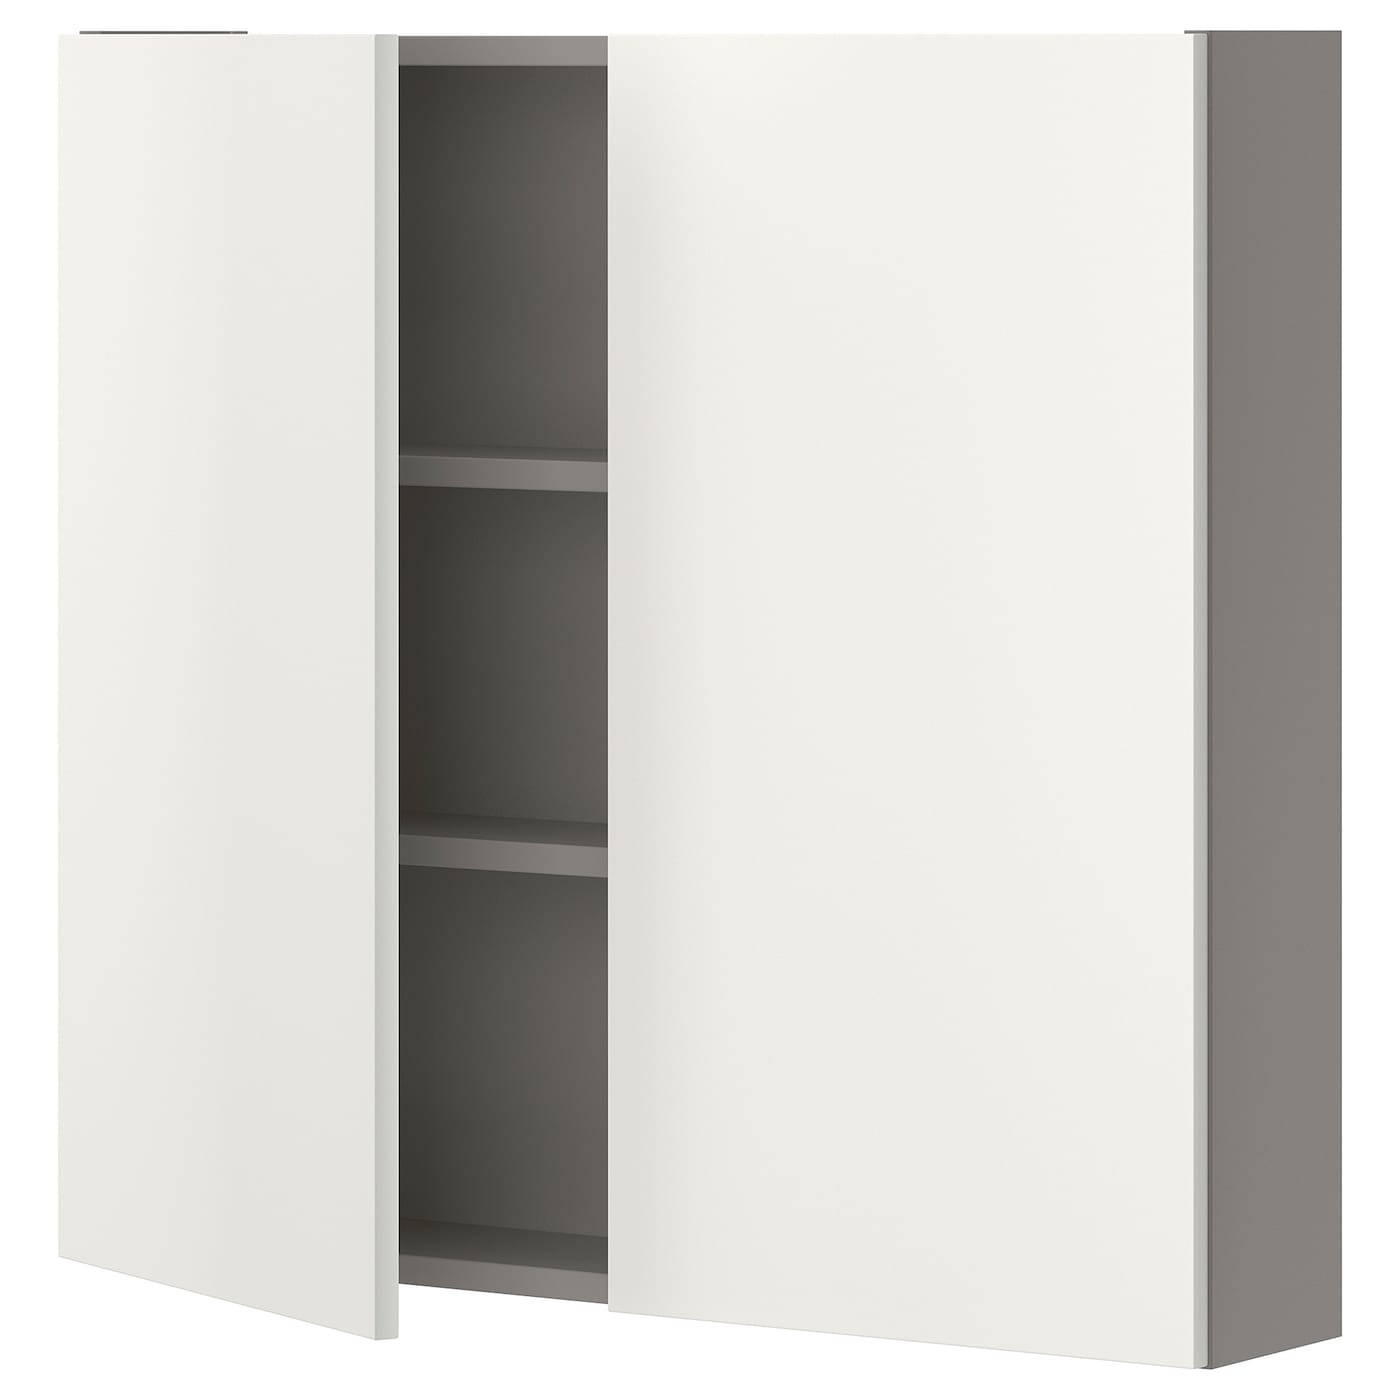 Настенный шкаф для ванной комнаты - ENHET IKEA/ ЭНХЕТ ИКЕА, 80х75х17 см, белый